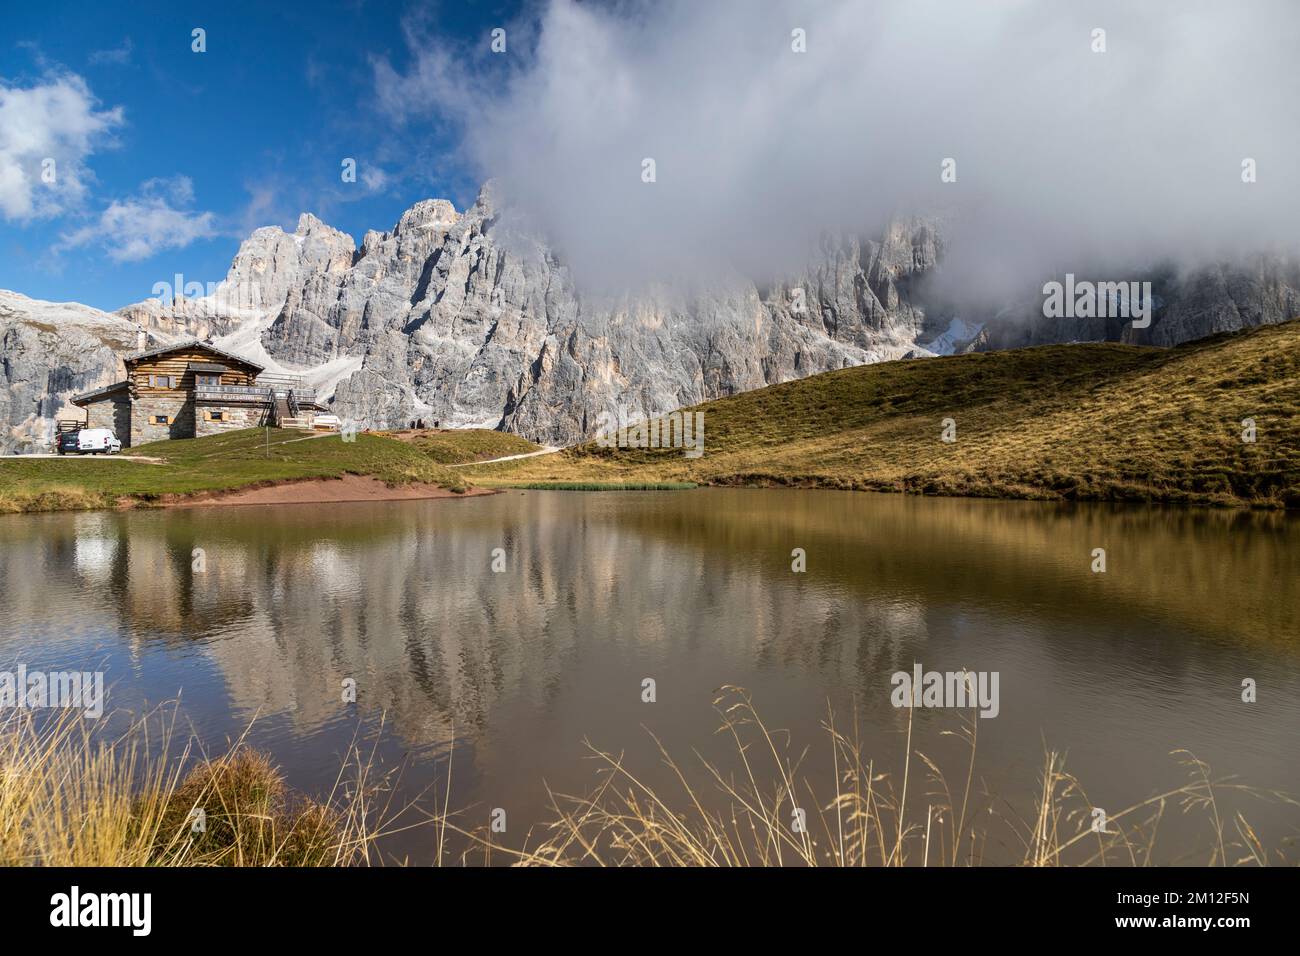 Europe, Italy, Alps, Dolomites, Mountains, Passo Rolle - Rifugio Baita Segantini Stock Photo